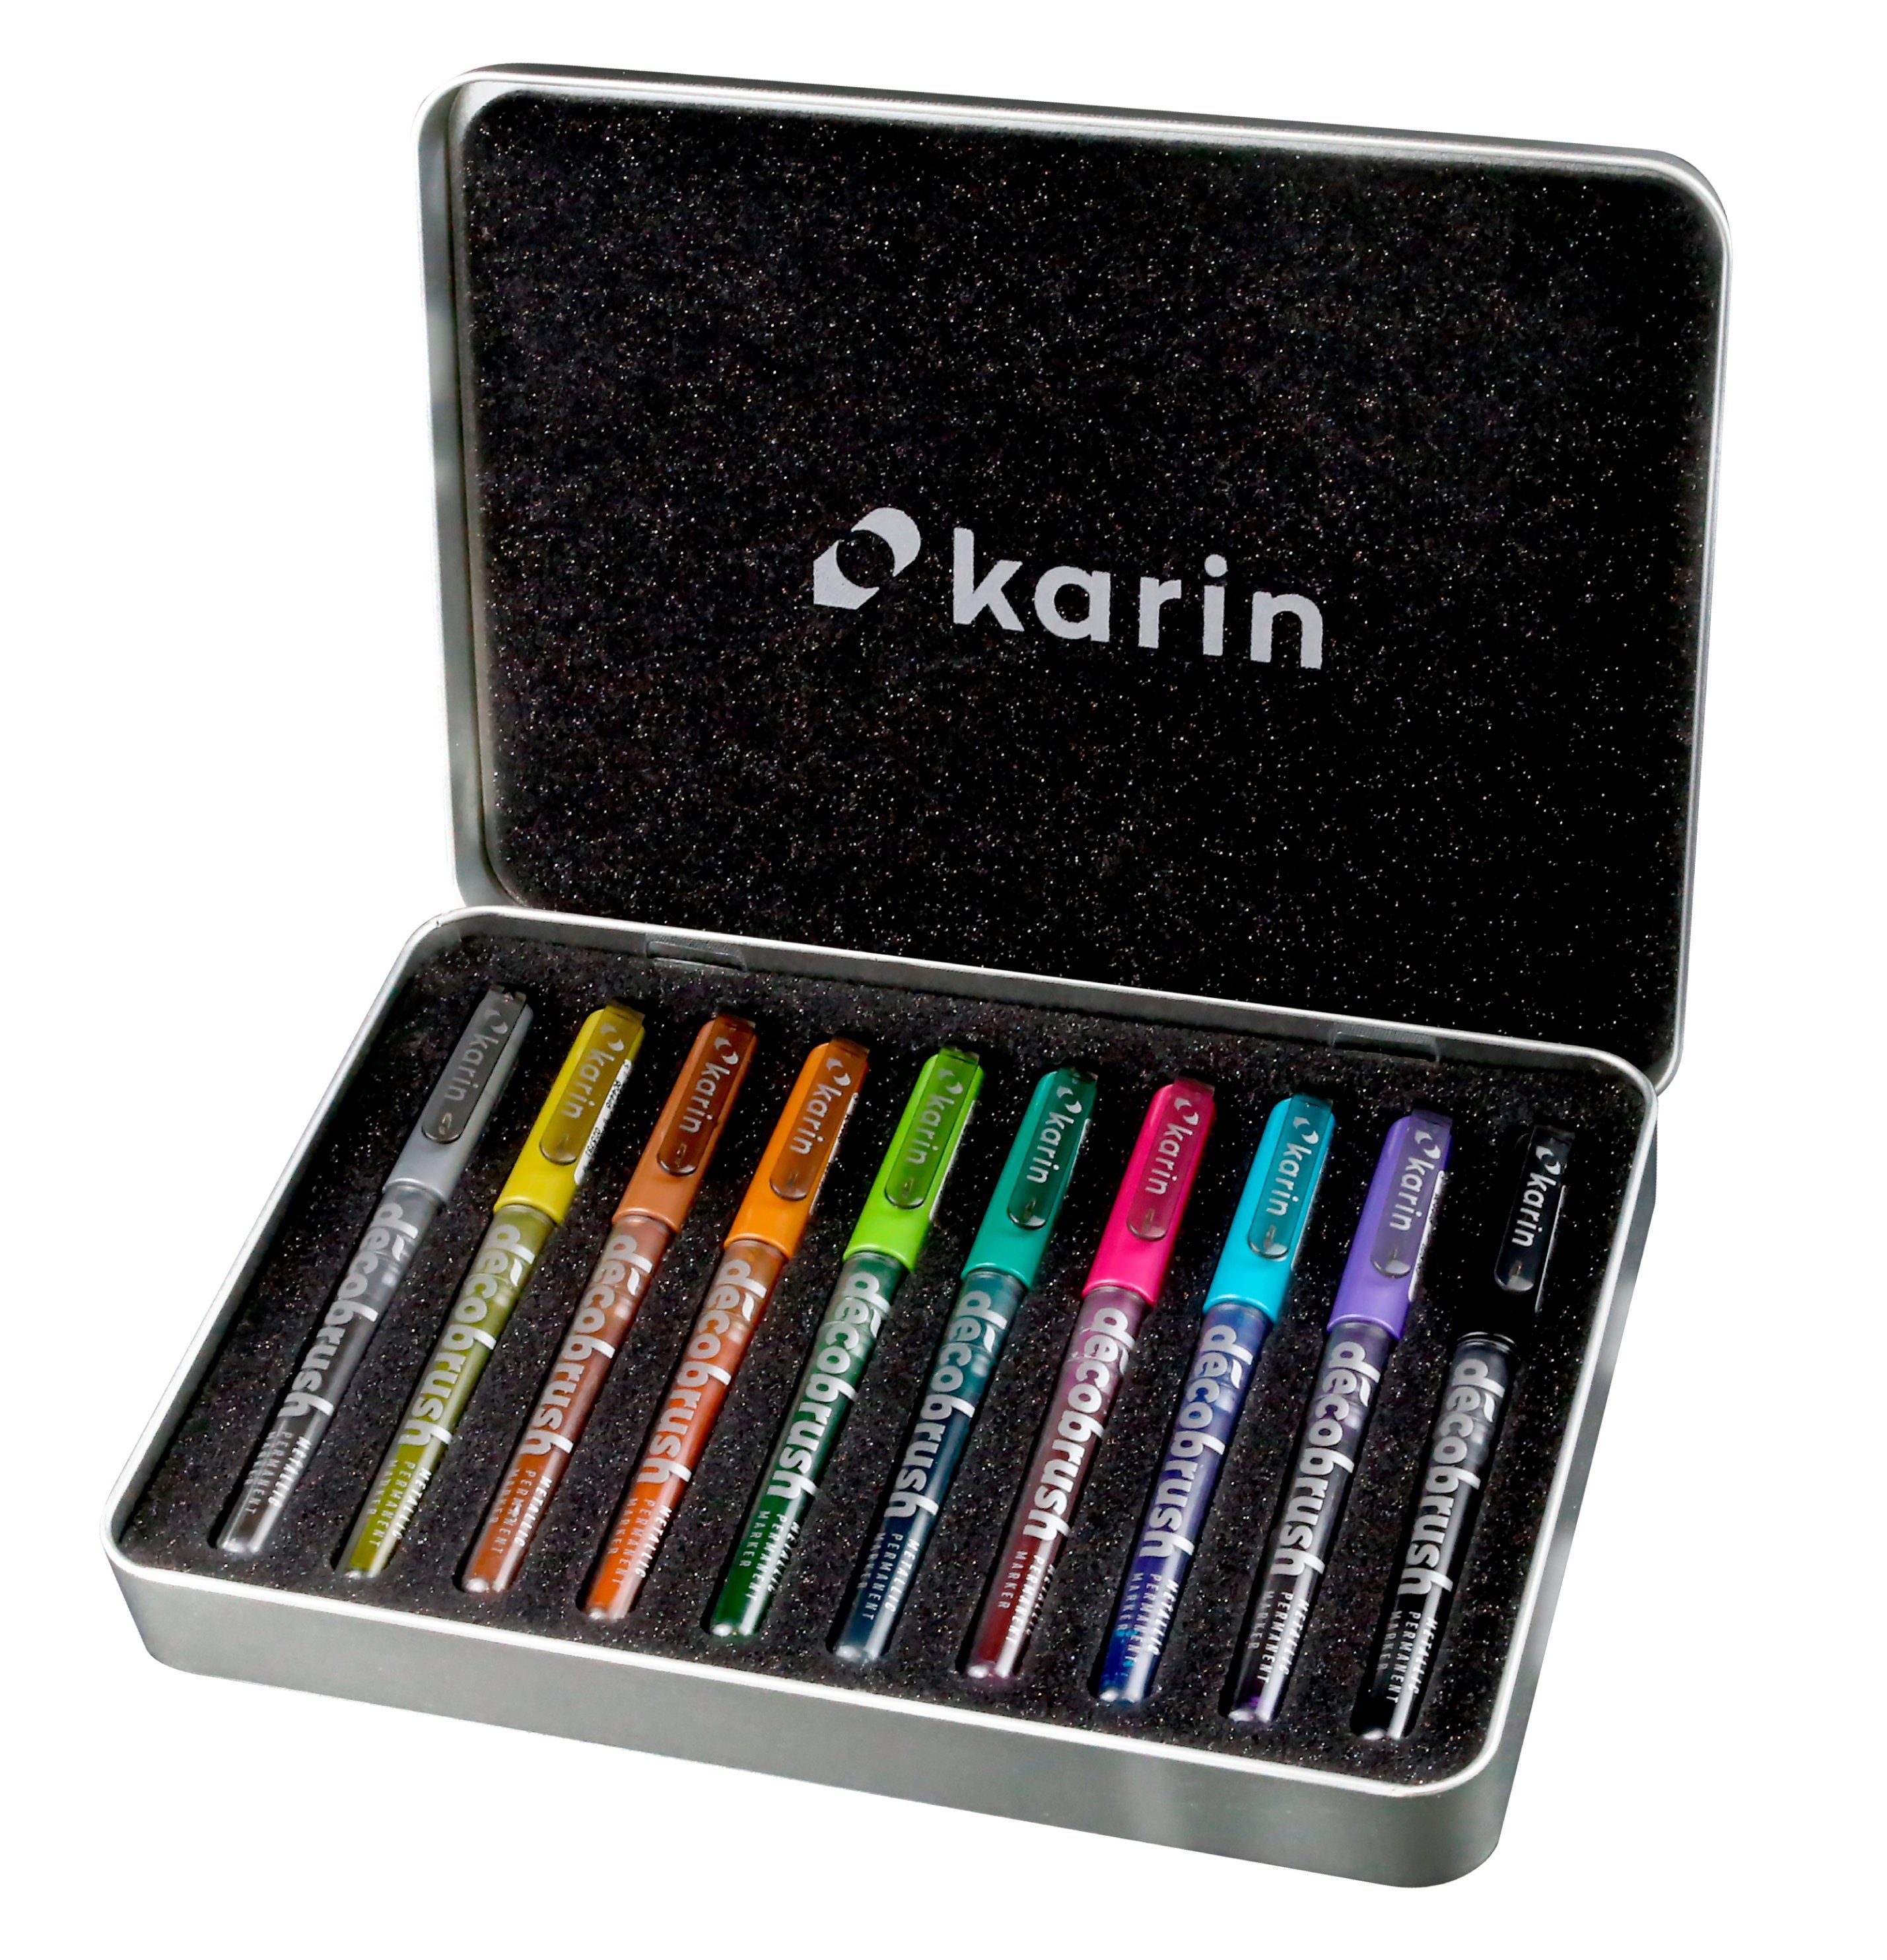 Farben Decobrush Pinselstift Metallic, 10 karin